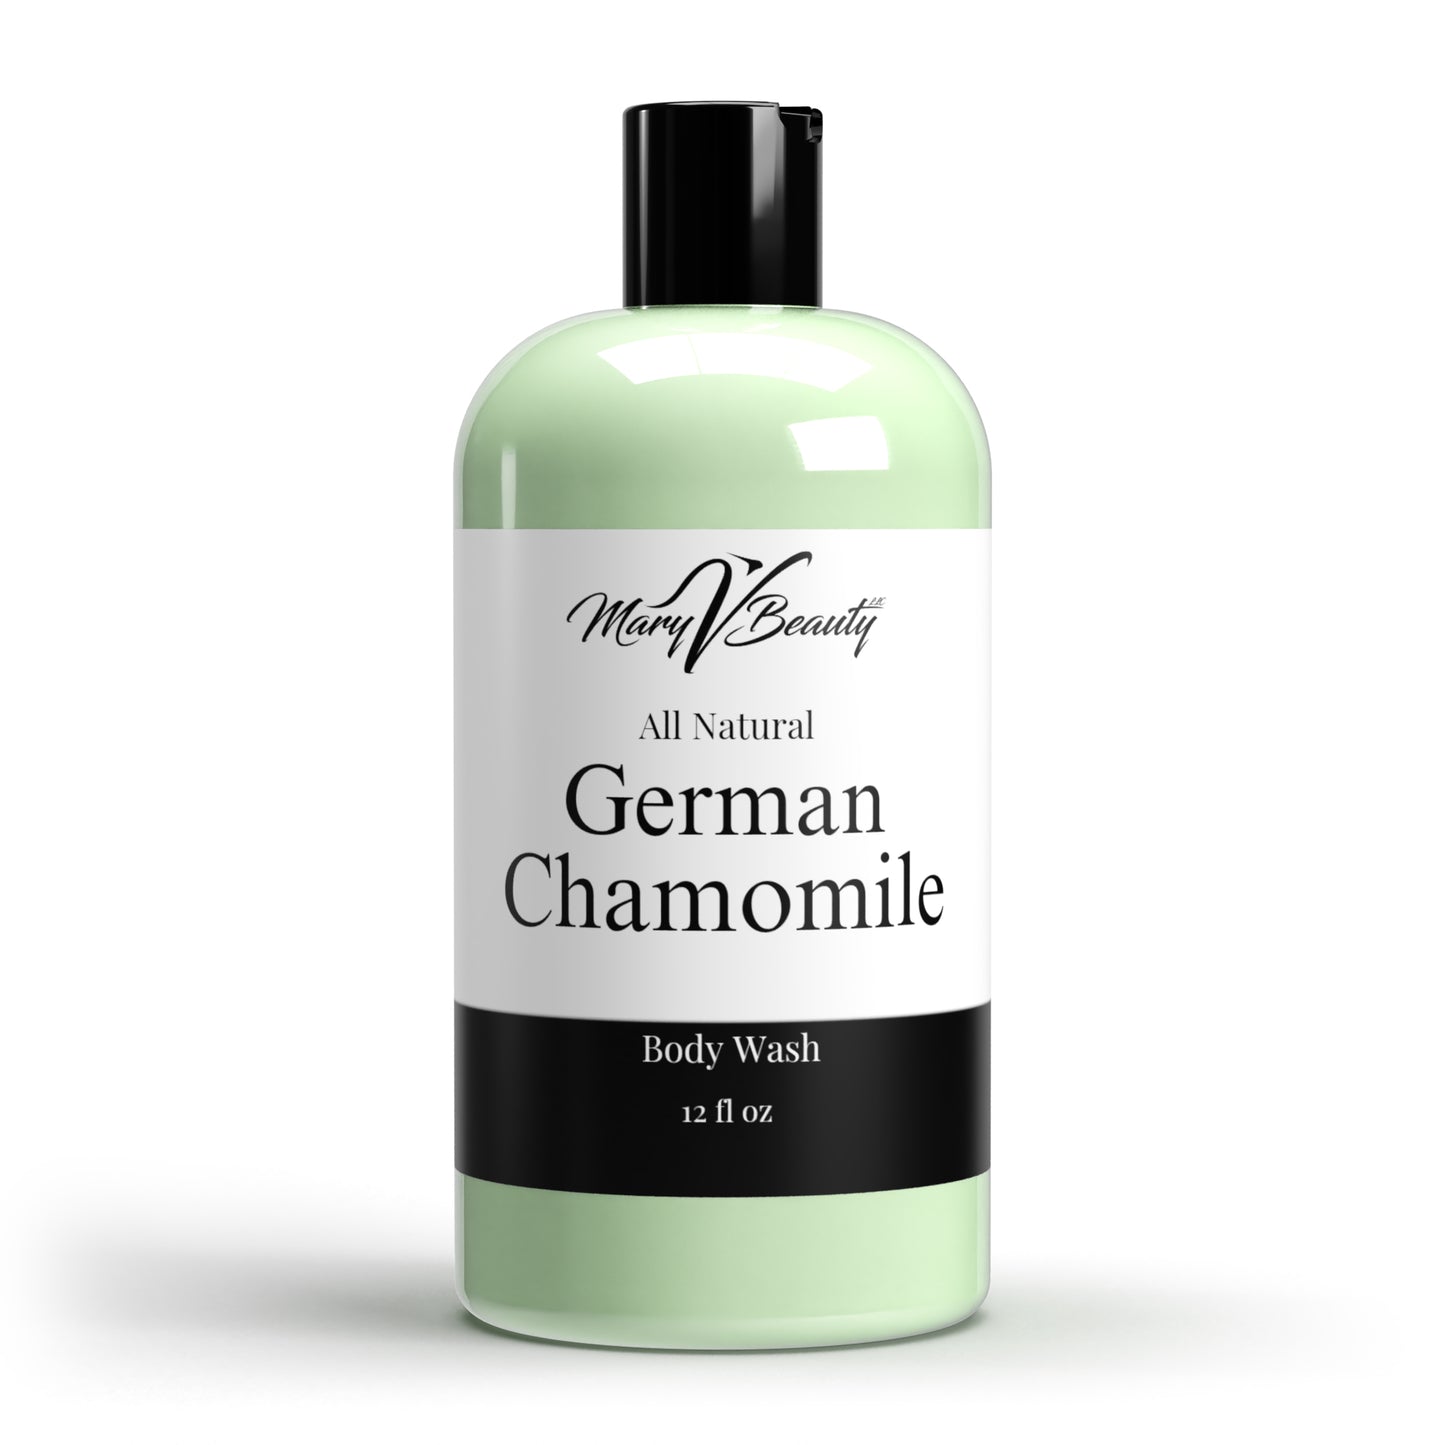 German Chamomile Body Wash